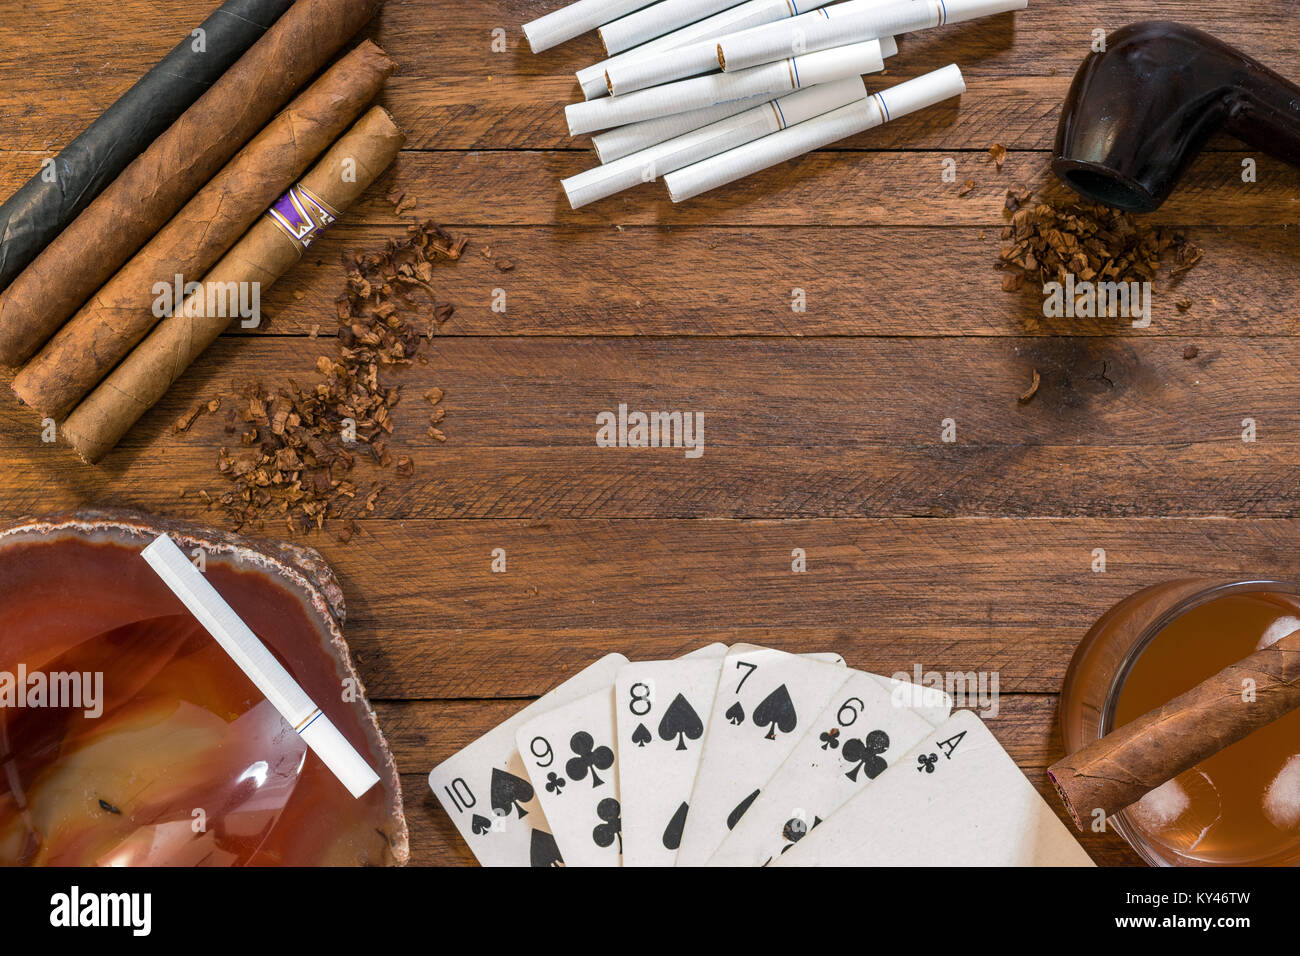 Rauchen und Tabak, Zigarren, Zigaretten und eine Pfeife mit Tabak, auf einem Holz- Hintergrund, mit Spielkarten, Aschenbecher und Trinken Stockfoto